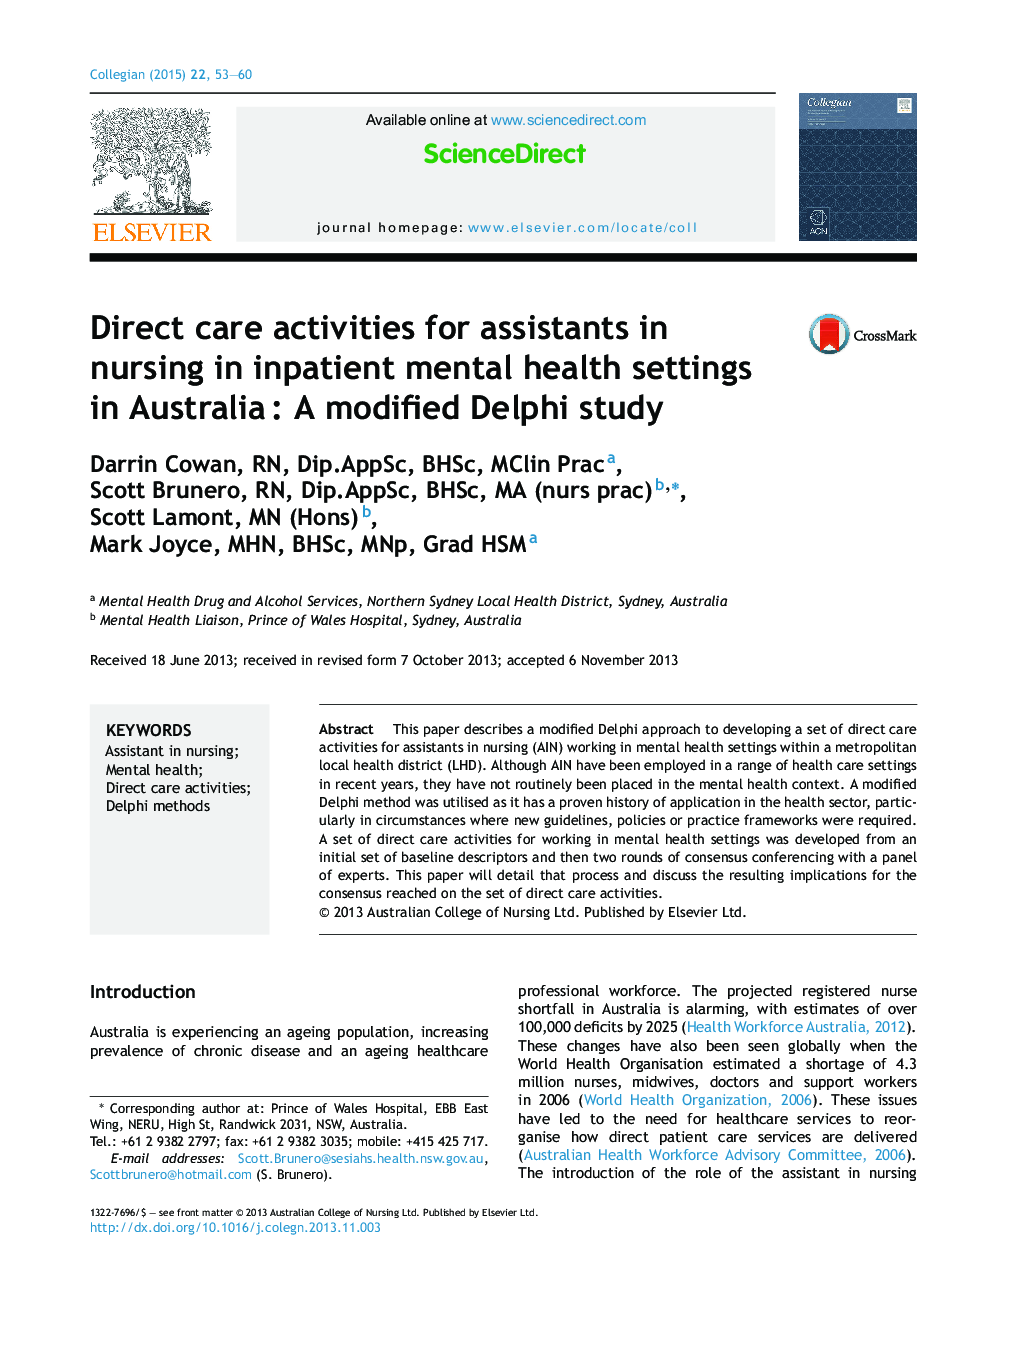 فعالیت های مراقبت مستقیم برای دستیاران در پرستاران در تنظیمات سلامت روانی بیماران بستری در استرالیا: یک مطالعه دلفی اصلاح شده